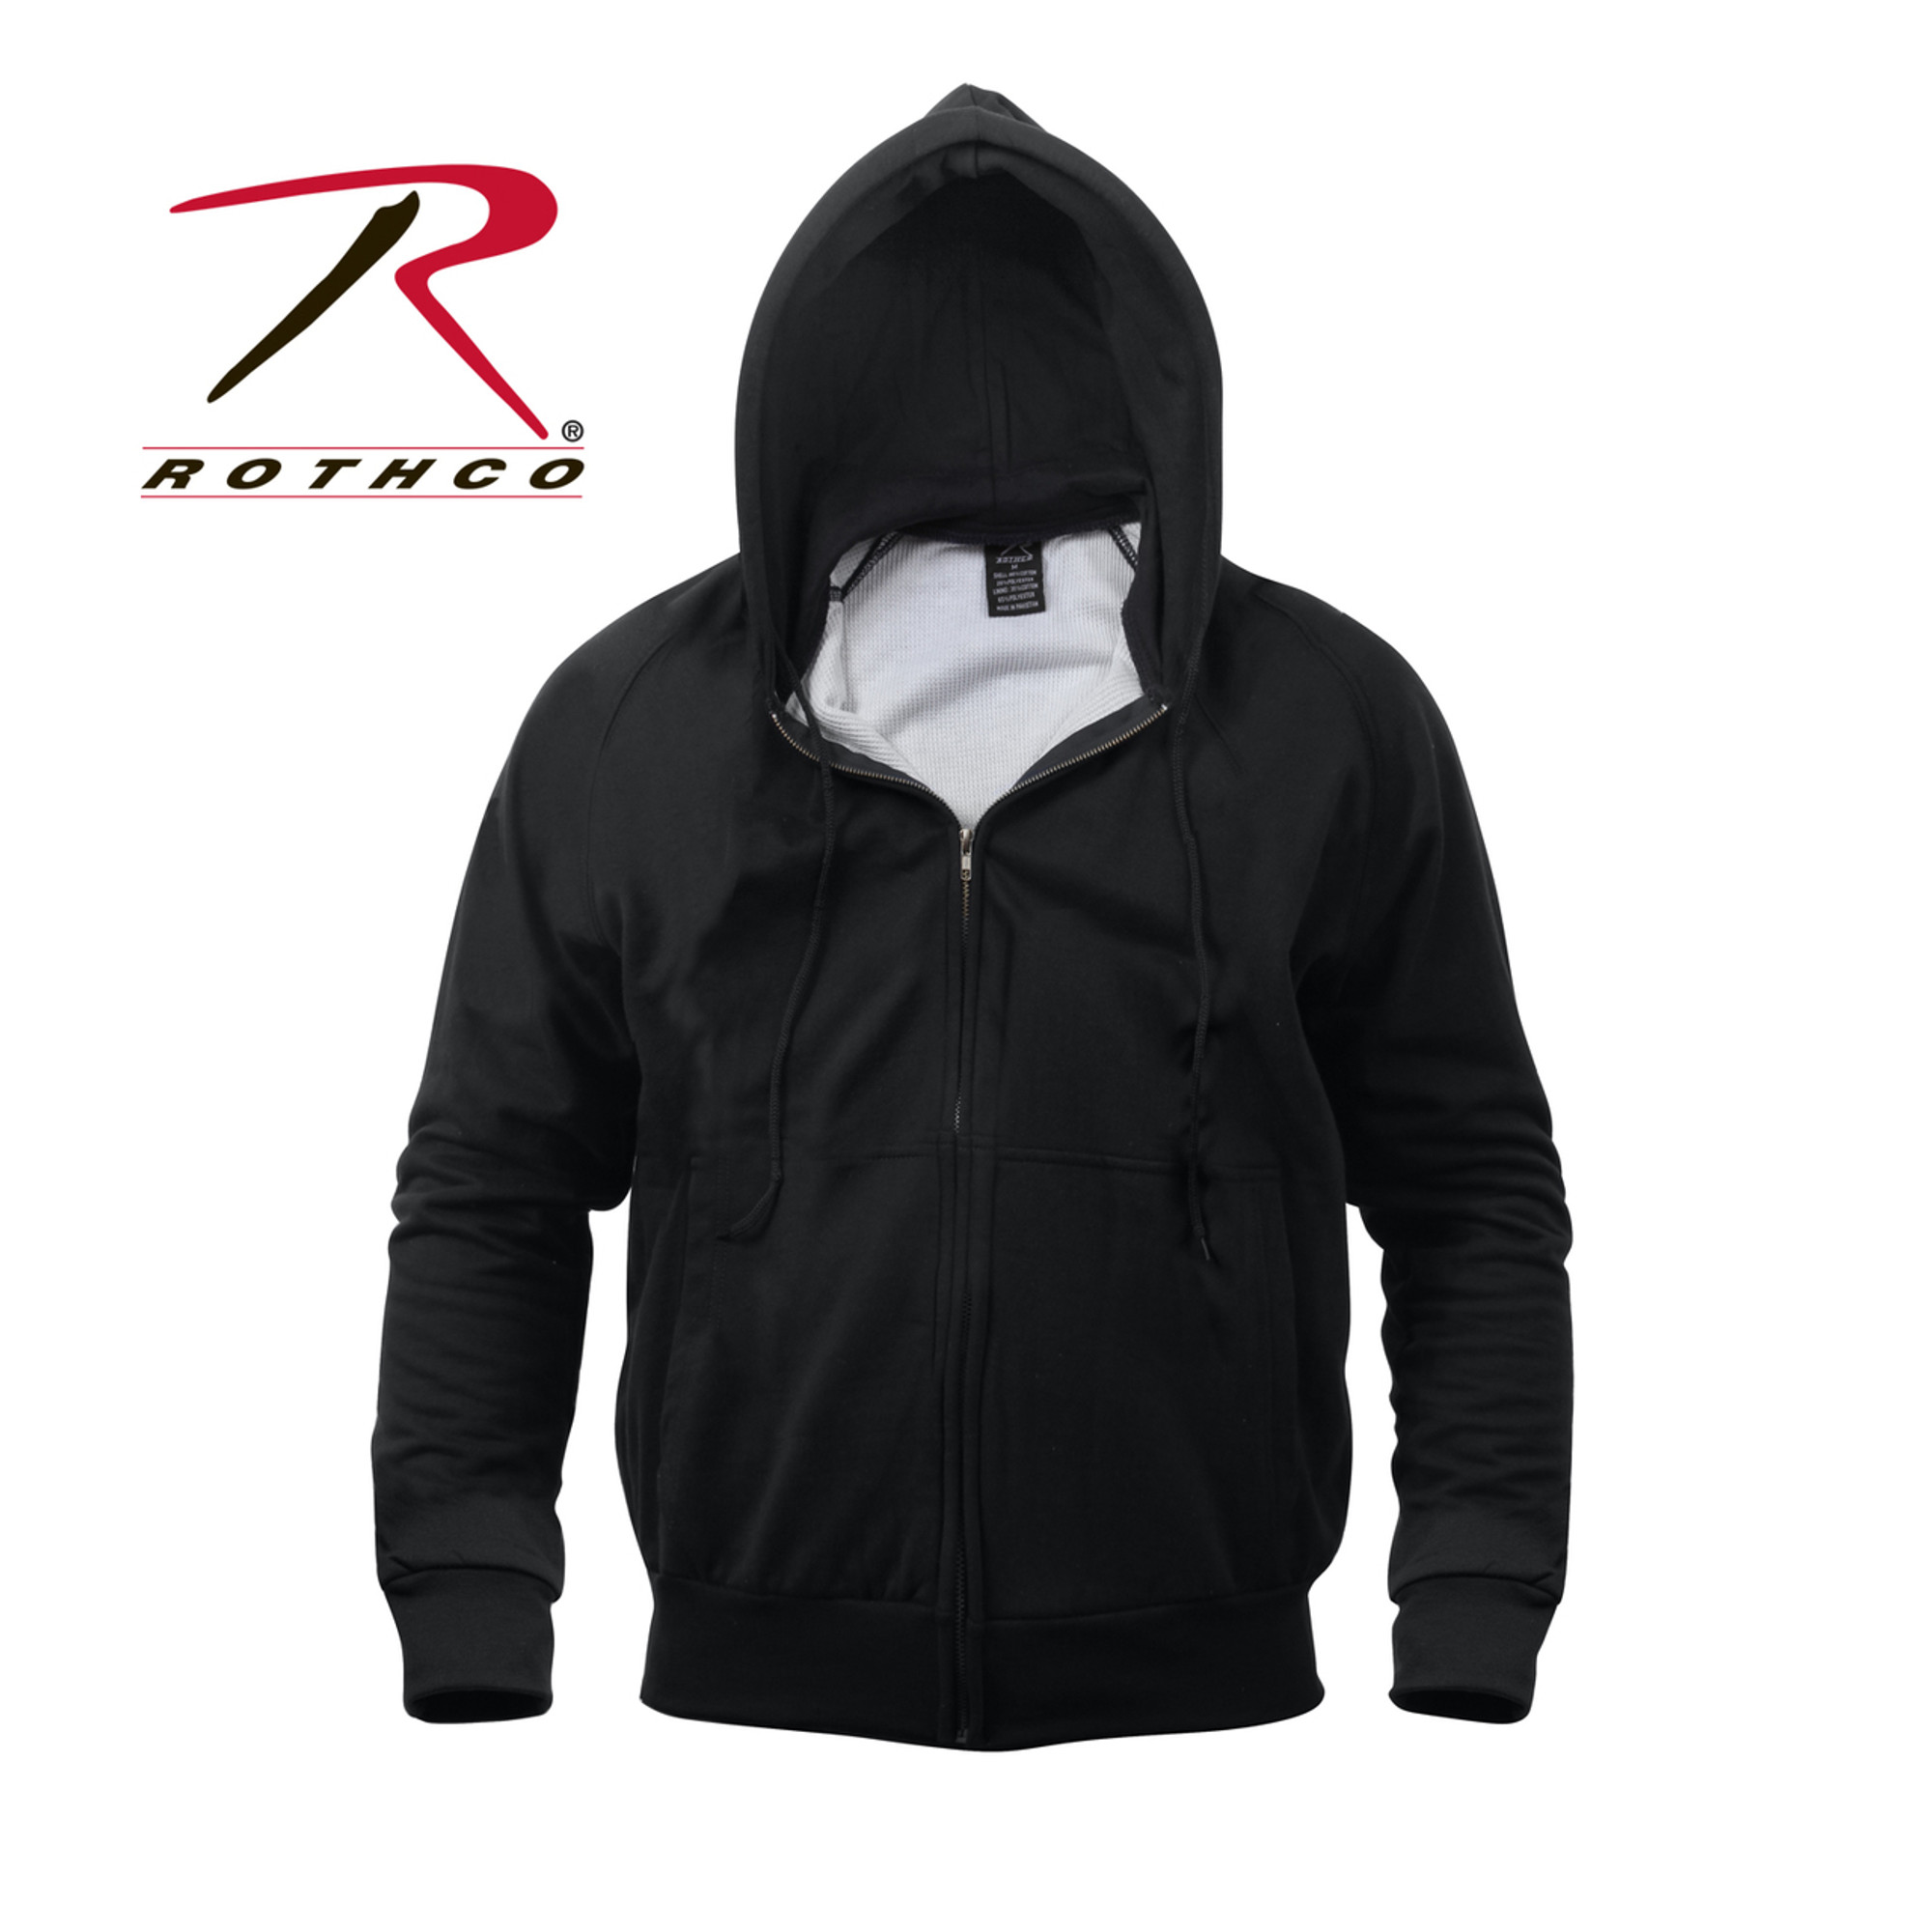 Thermal Lined Zipper Hooded Sweatshirt - Black